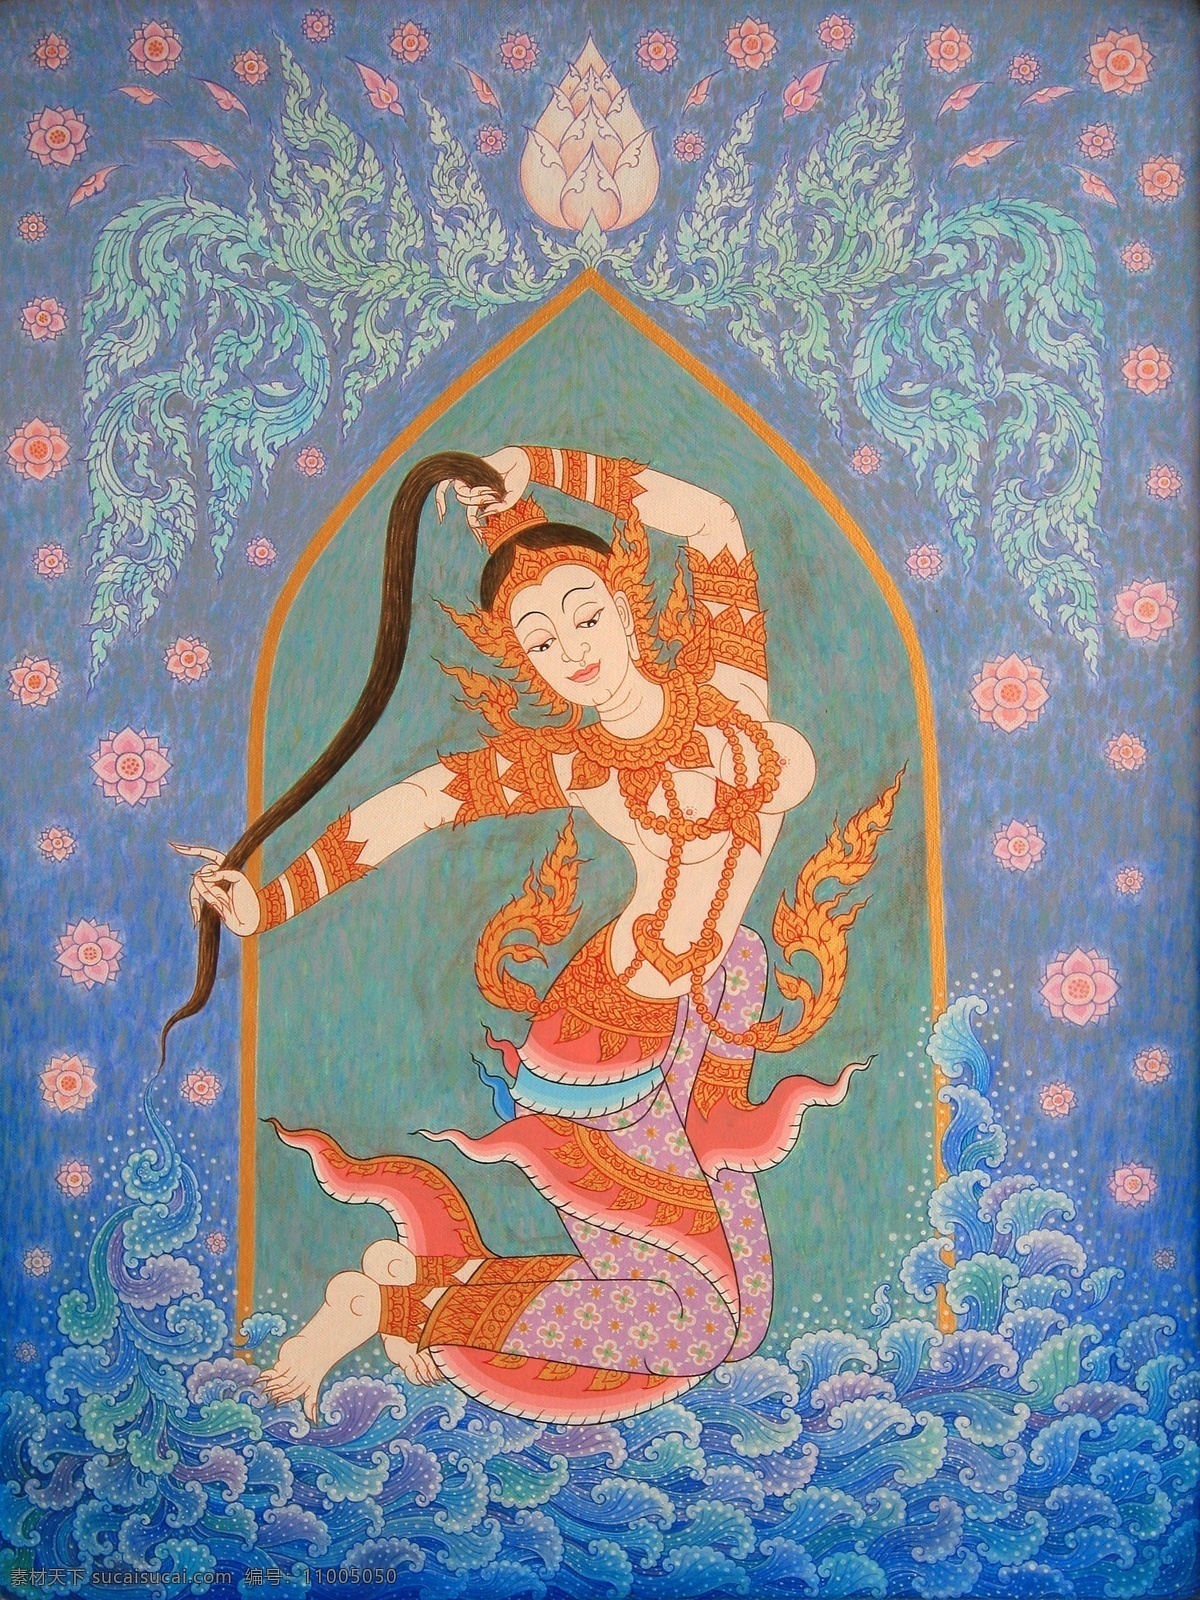 高清 绘画 绘画书法 泰国 文化艺术 艺术 拉美托拉尼 2设计素材 2模板下载 宗教画 艺术画 油画 高清绘画 装饰素材